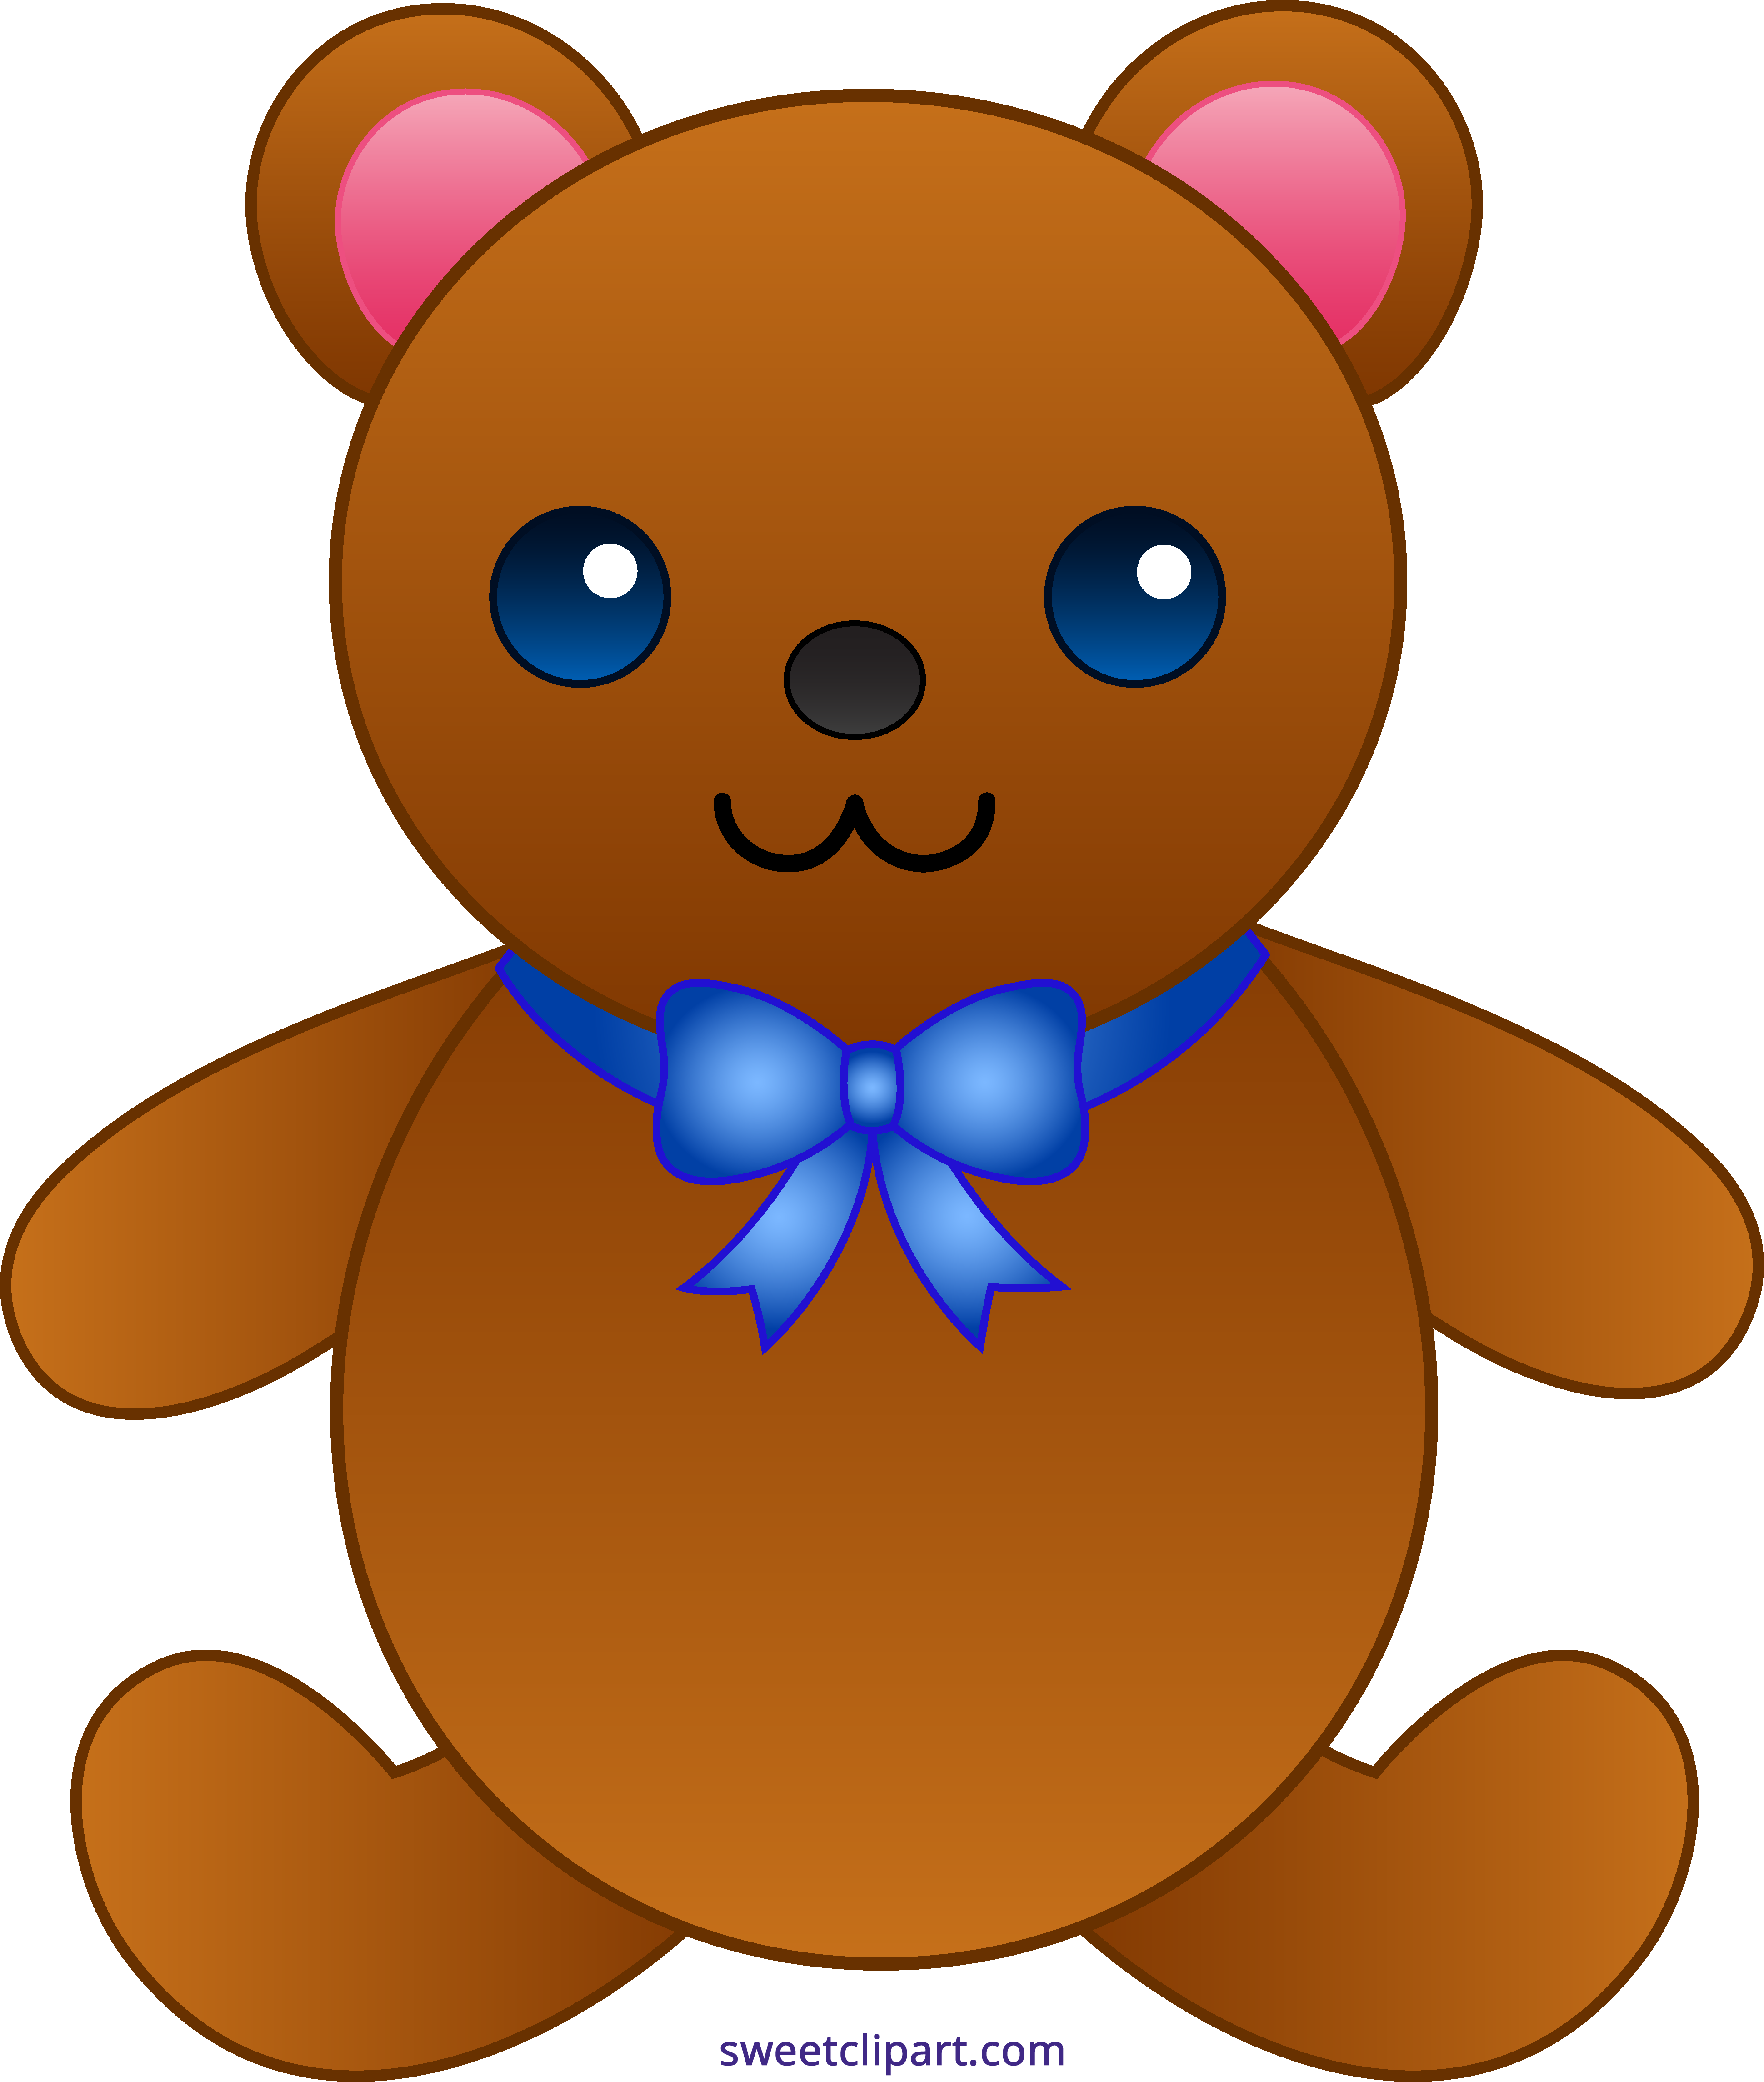 Cute Teddy Bear With Bowtie Clipart.